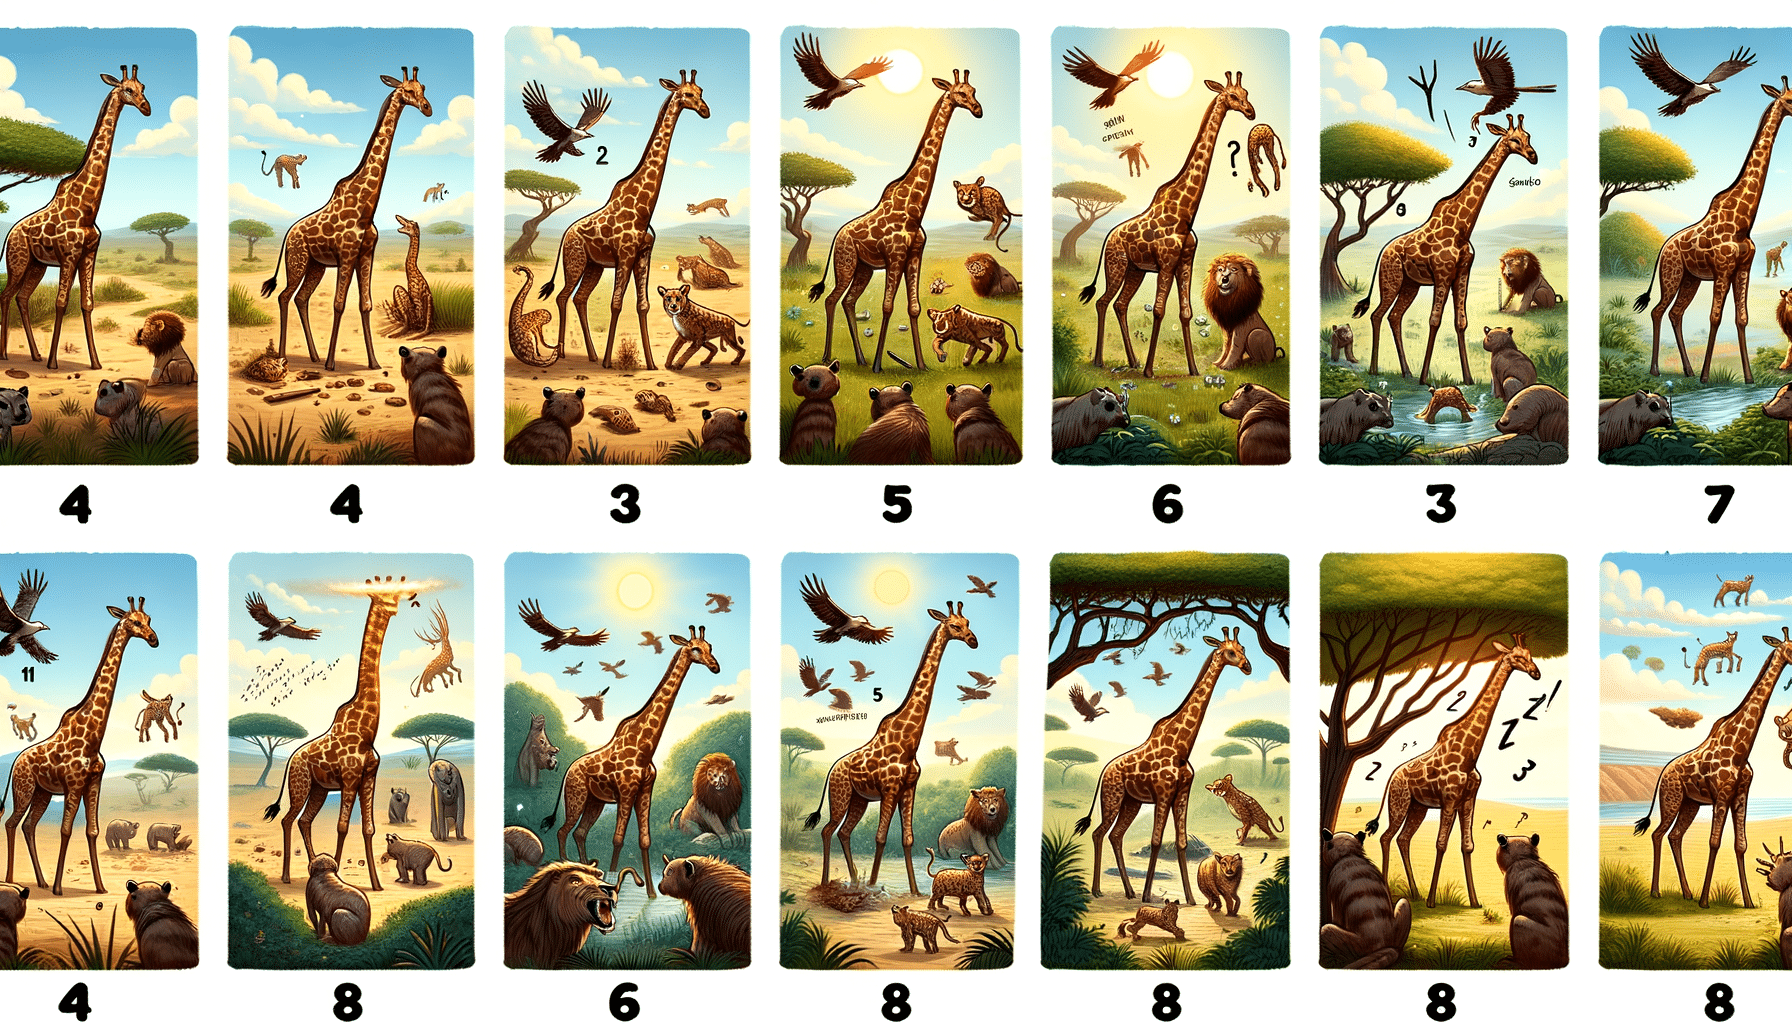 découvrez huit anecdotes insolites sur les stratégies de protection des girafes contre les prédateurs. des informations fascinantes sur ces animaux impressionnants !